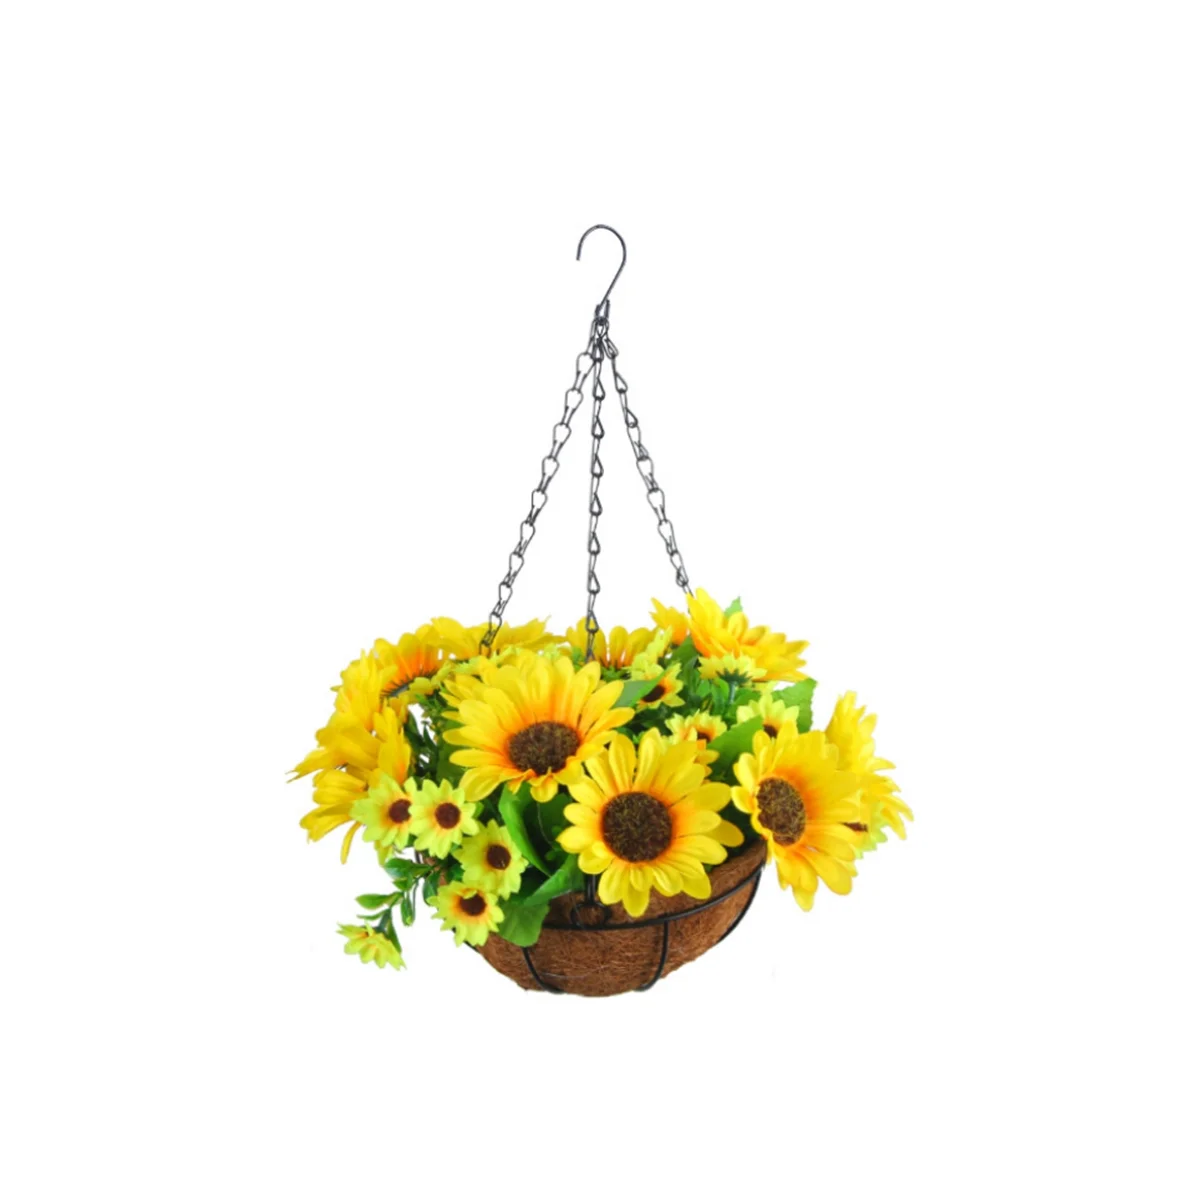 

Искусственные подвесные цветы в корзине для украшения внутреннего дворика, газона, сада, для украшения улицы и помещения-желтые